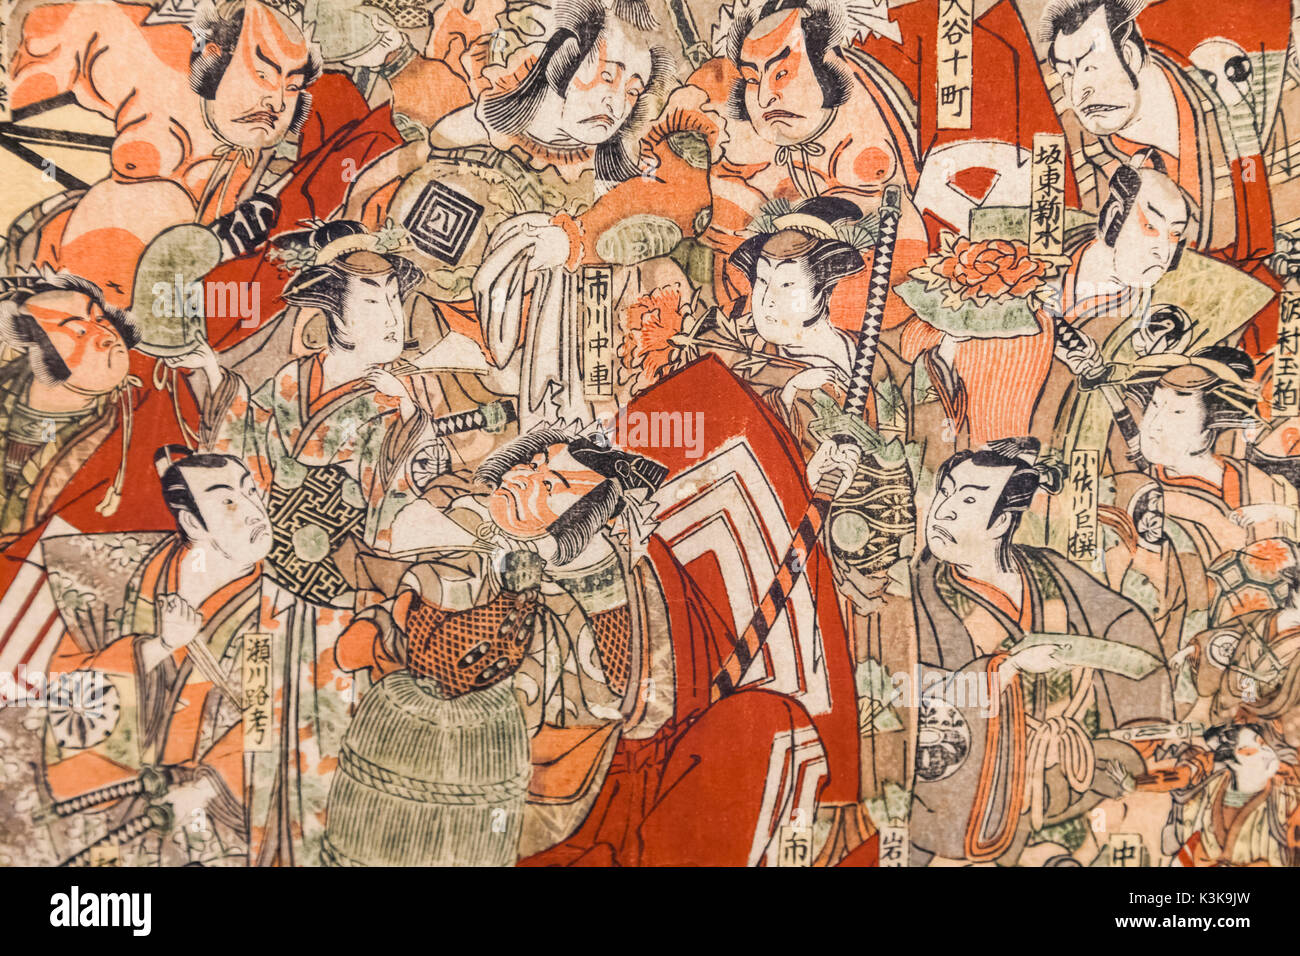 Le Japon, Hoshu, Tokyo, Ueno Park, Musée National de Tokyo, Honkan Hall, montrant d'acteurs de Kabuki des trois théâtres d'Edo par Katsukawa Shunko daté 1791 Banque D'Images